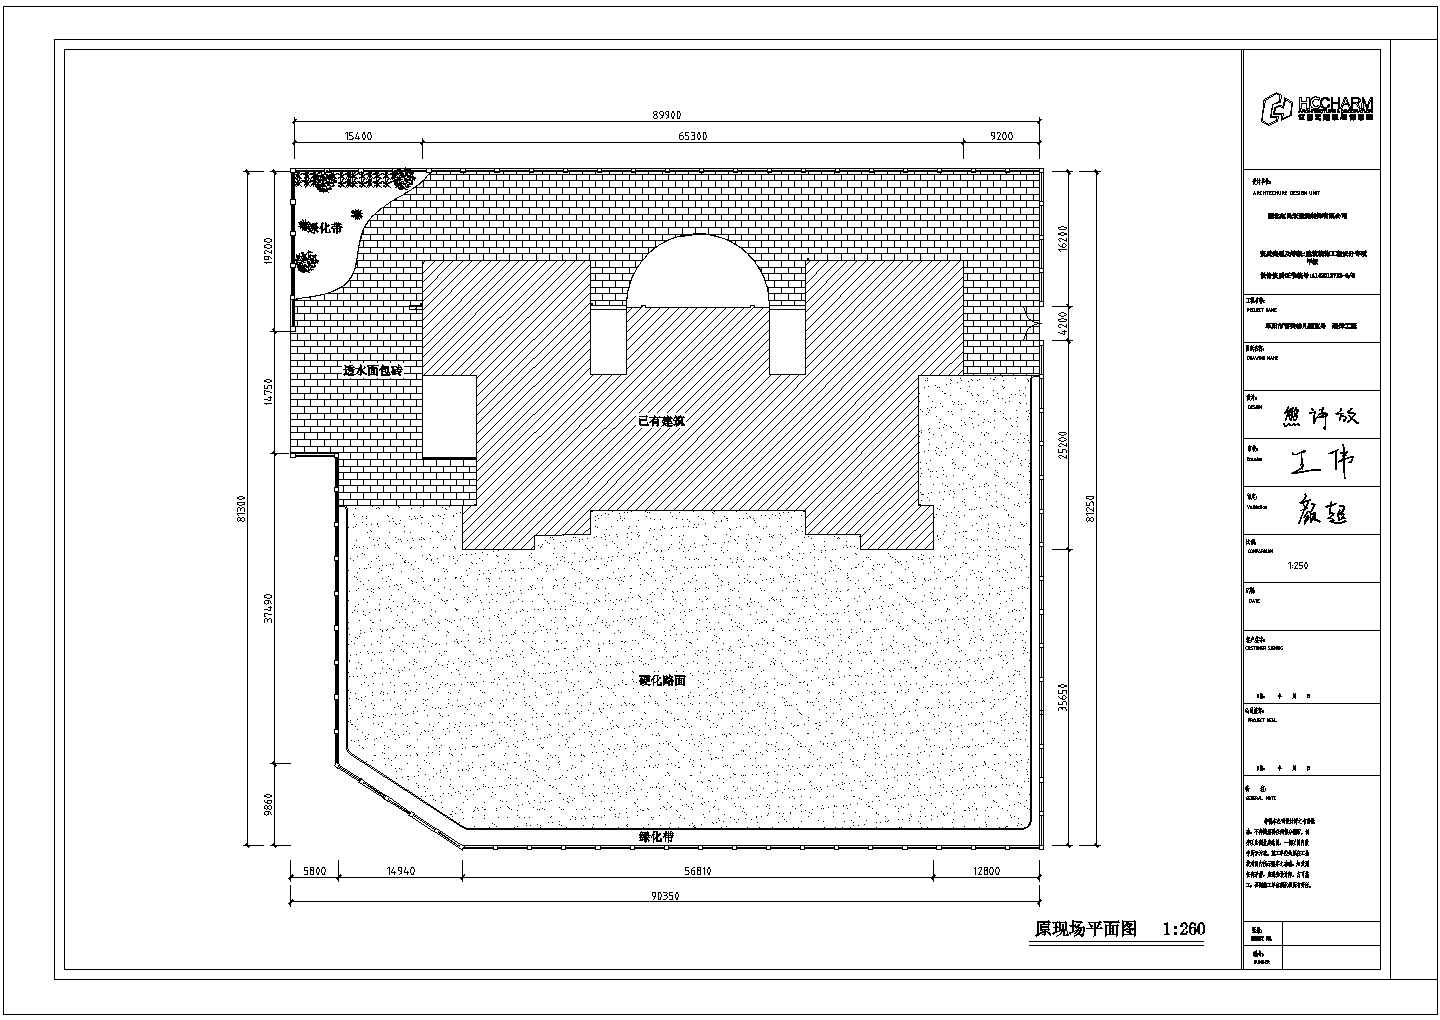 育英幼儿园庭院装饰施工图-平面图CAD设计施工图纸完整大样图